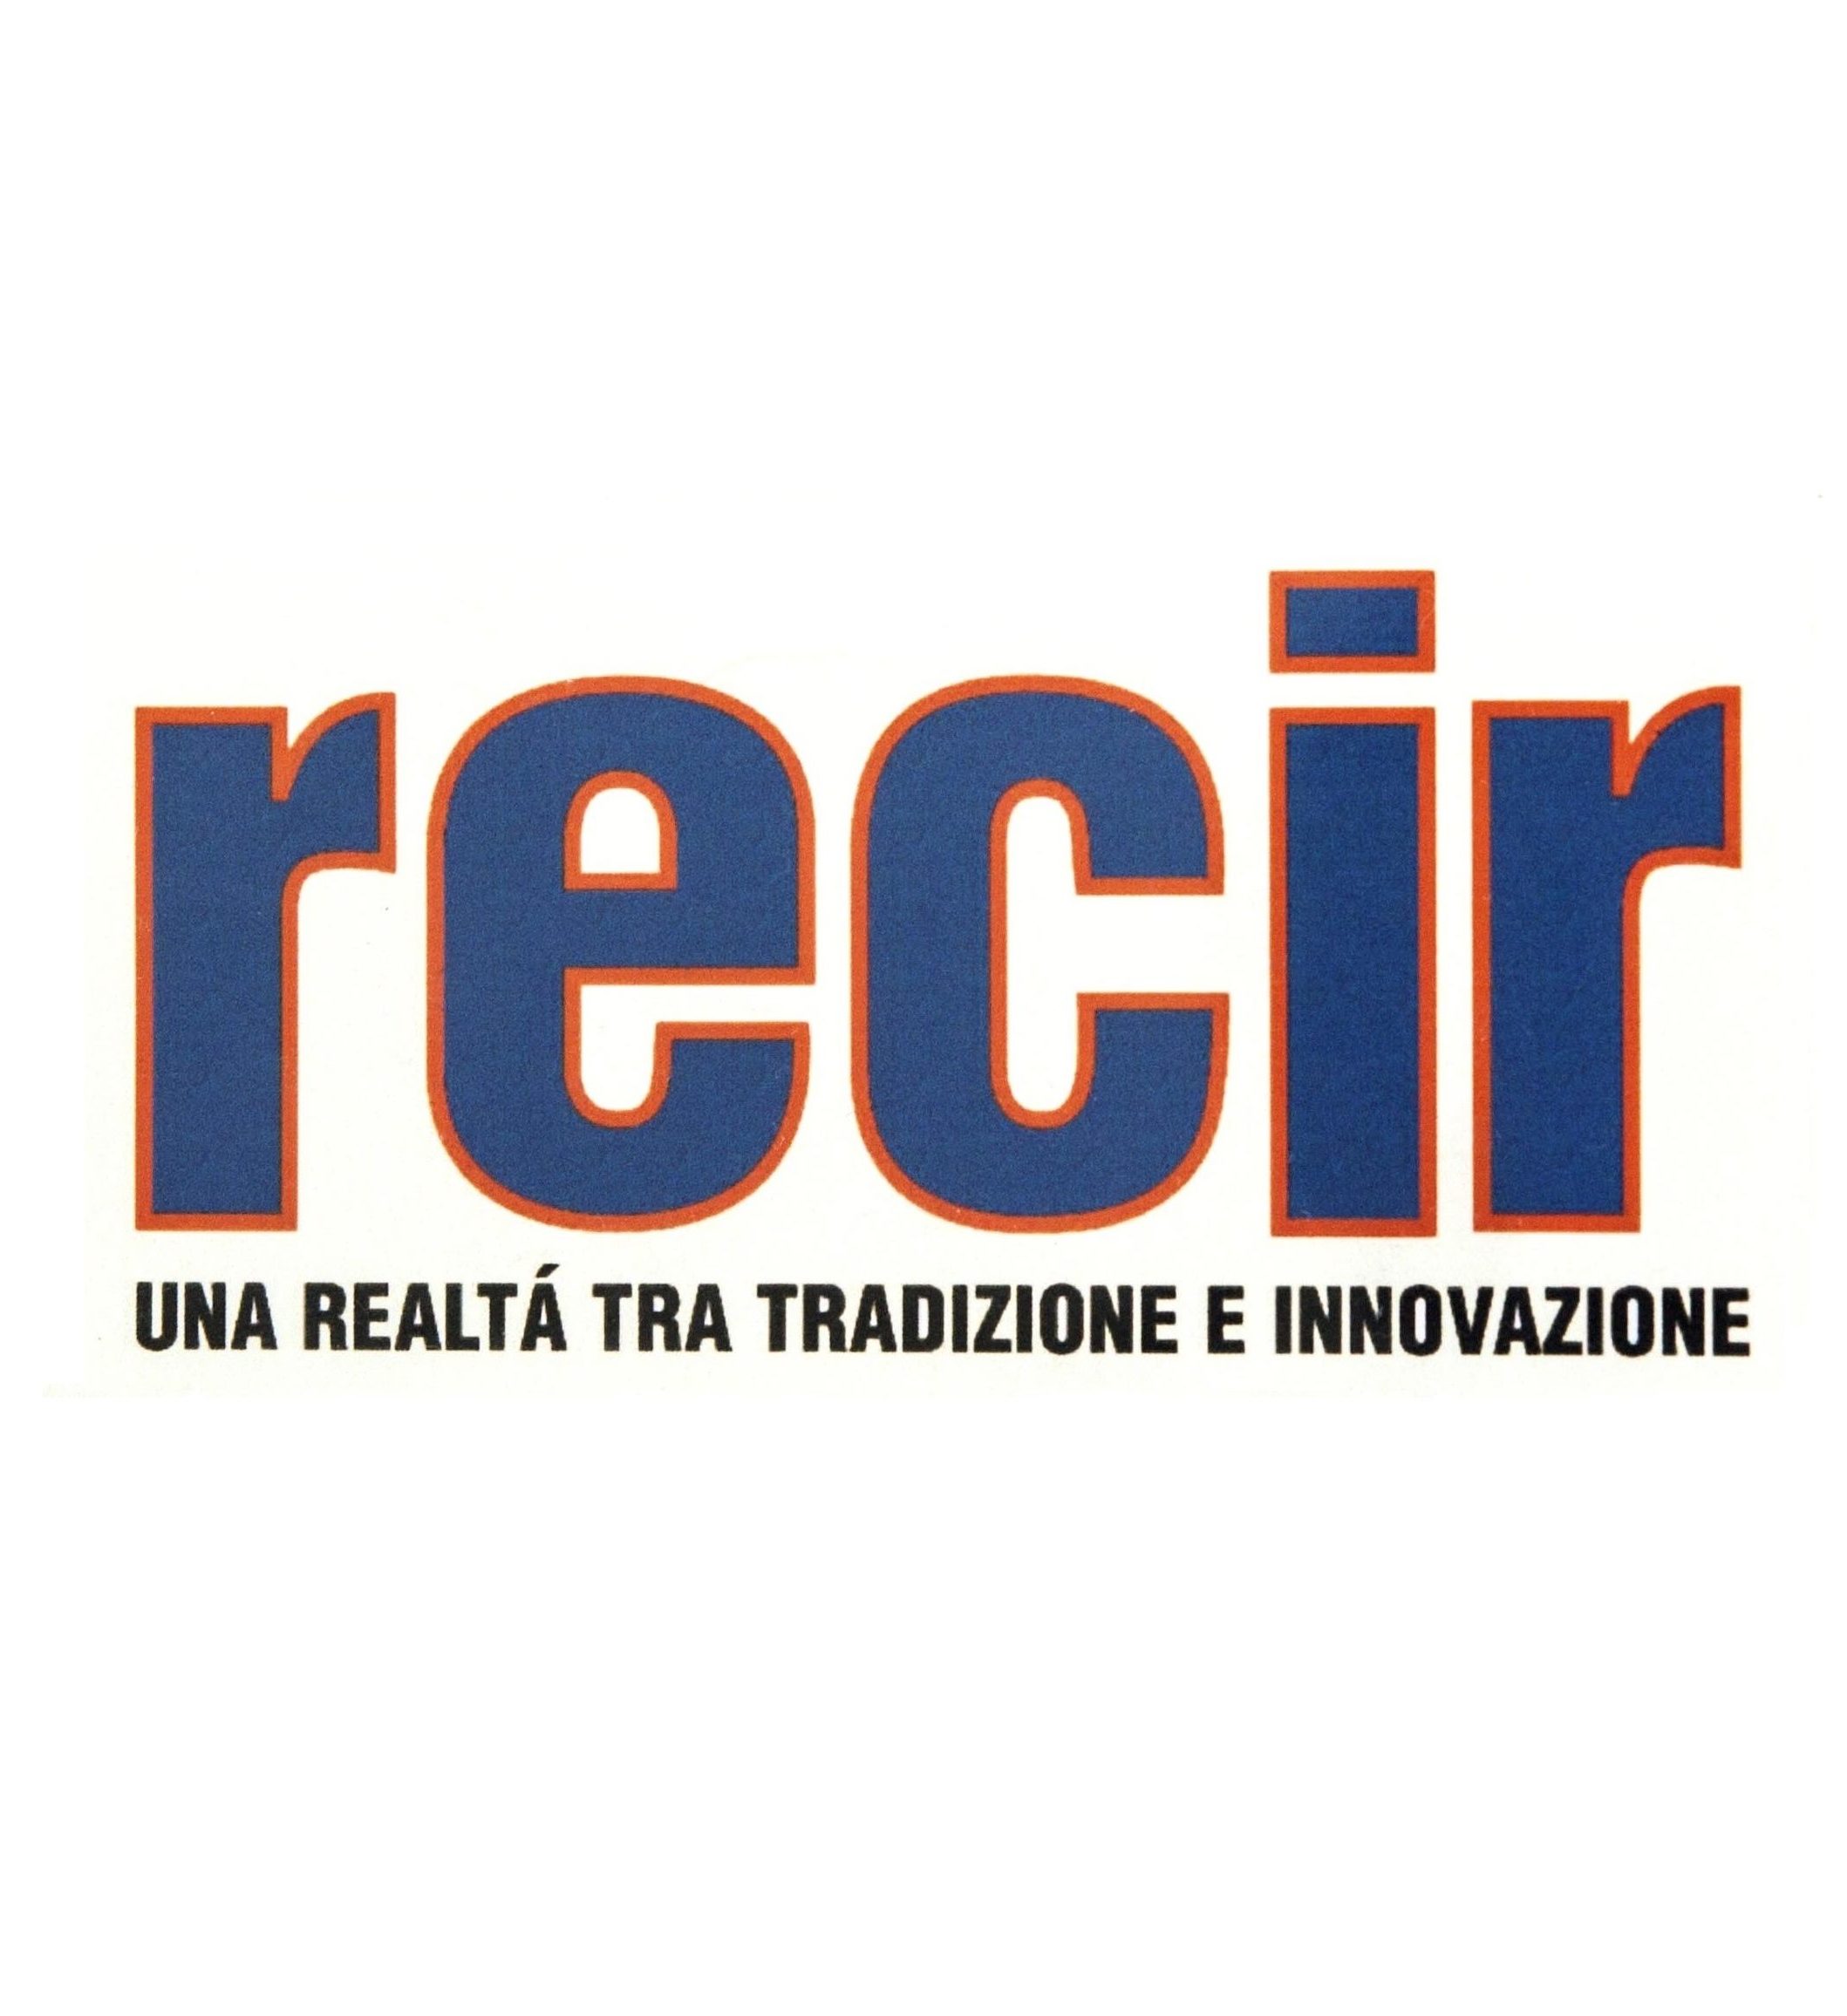 Recir - Year 2000